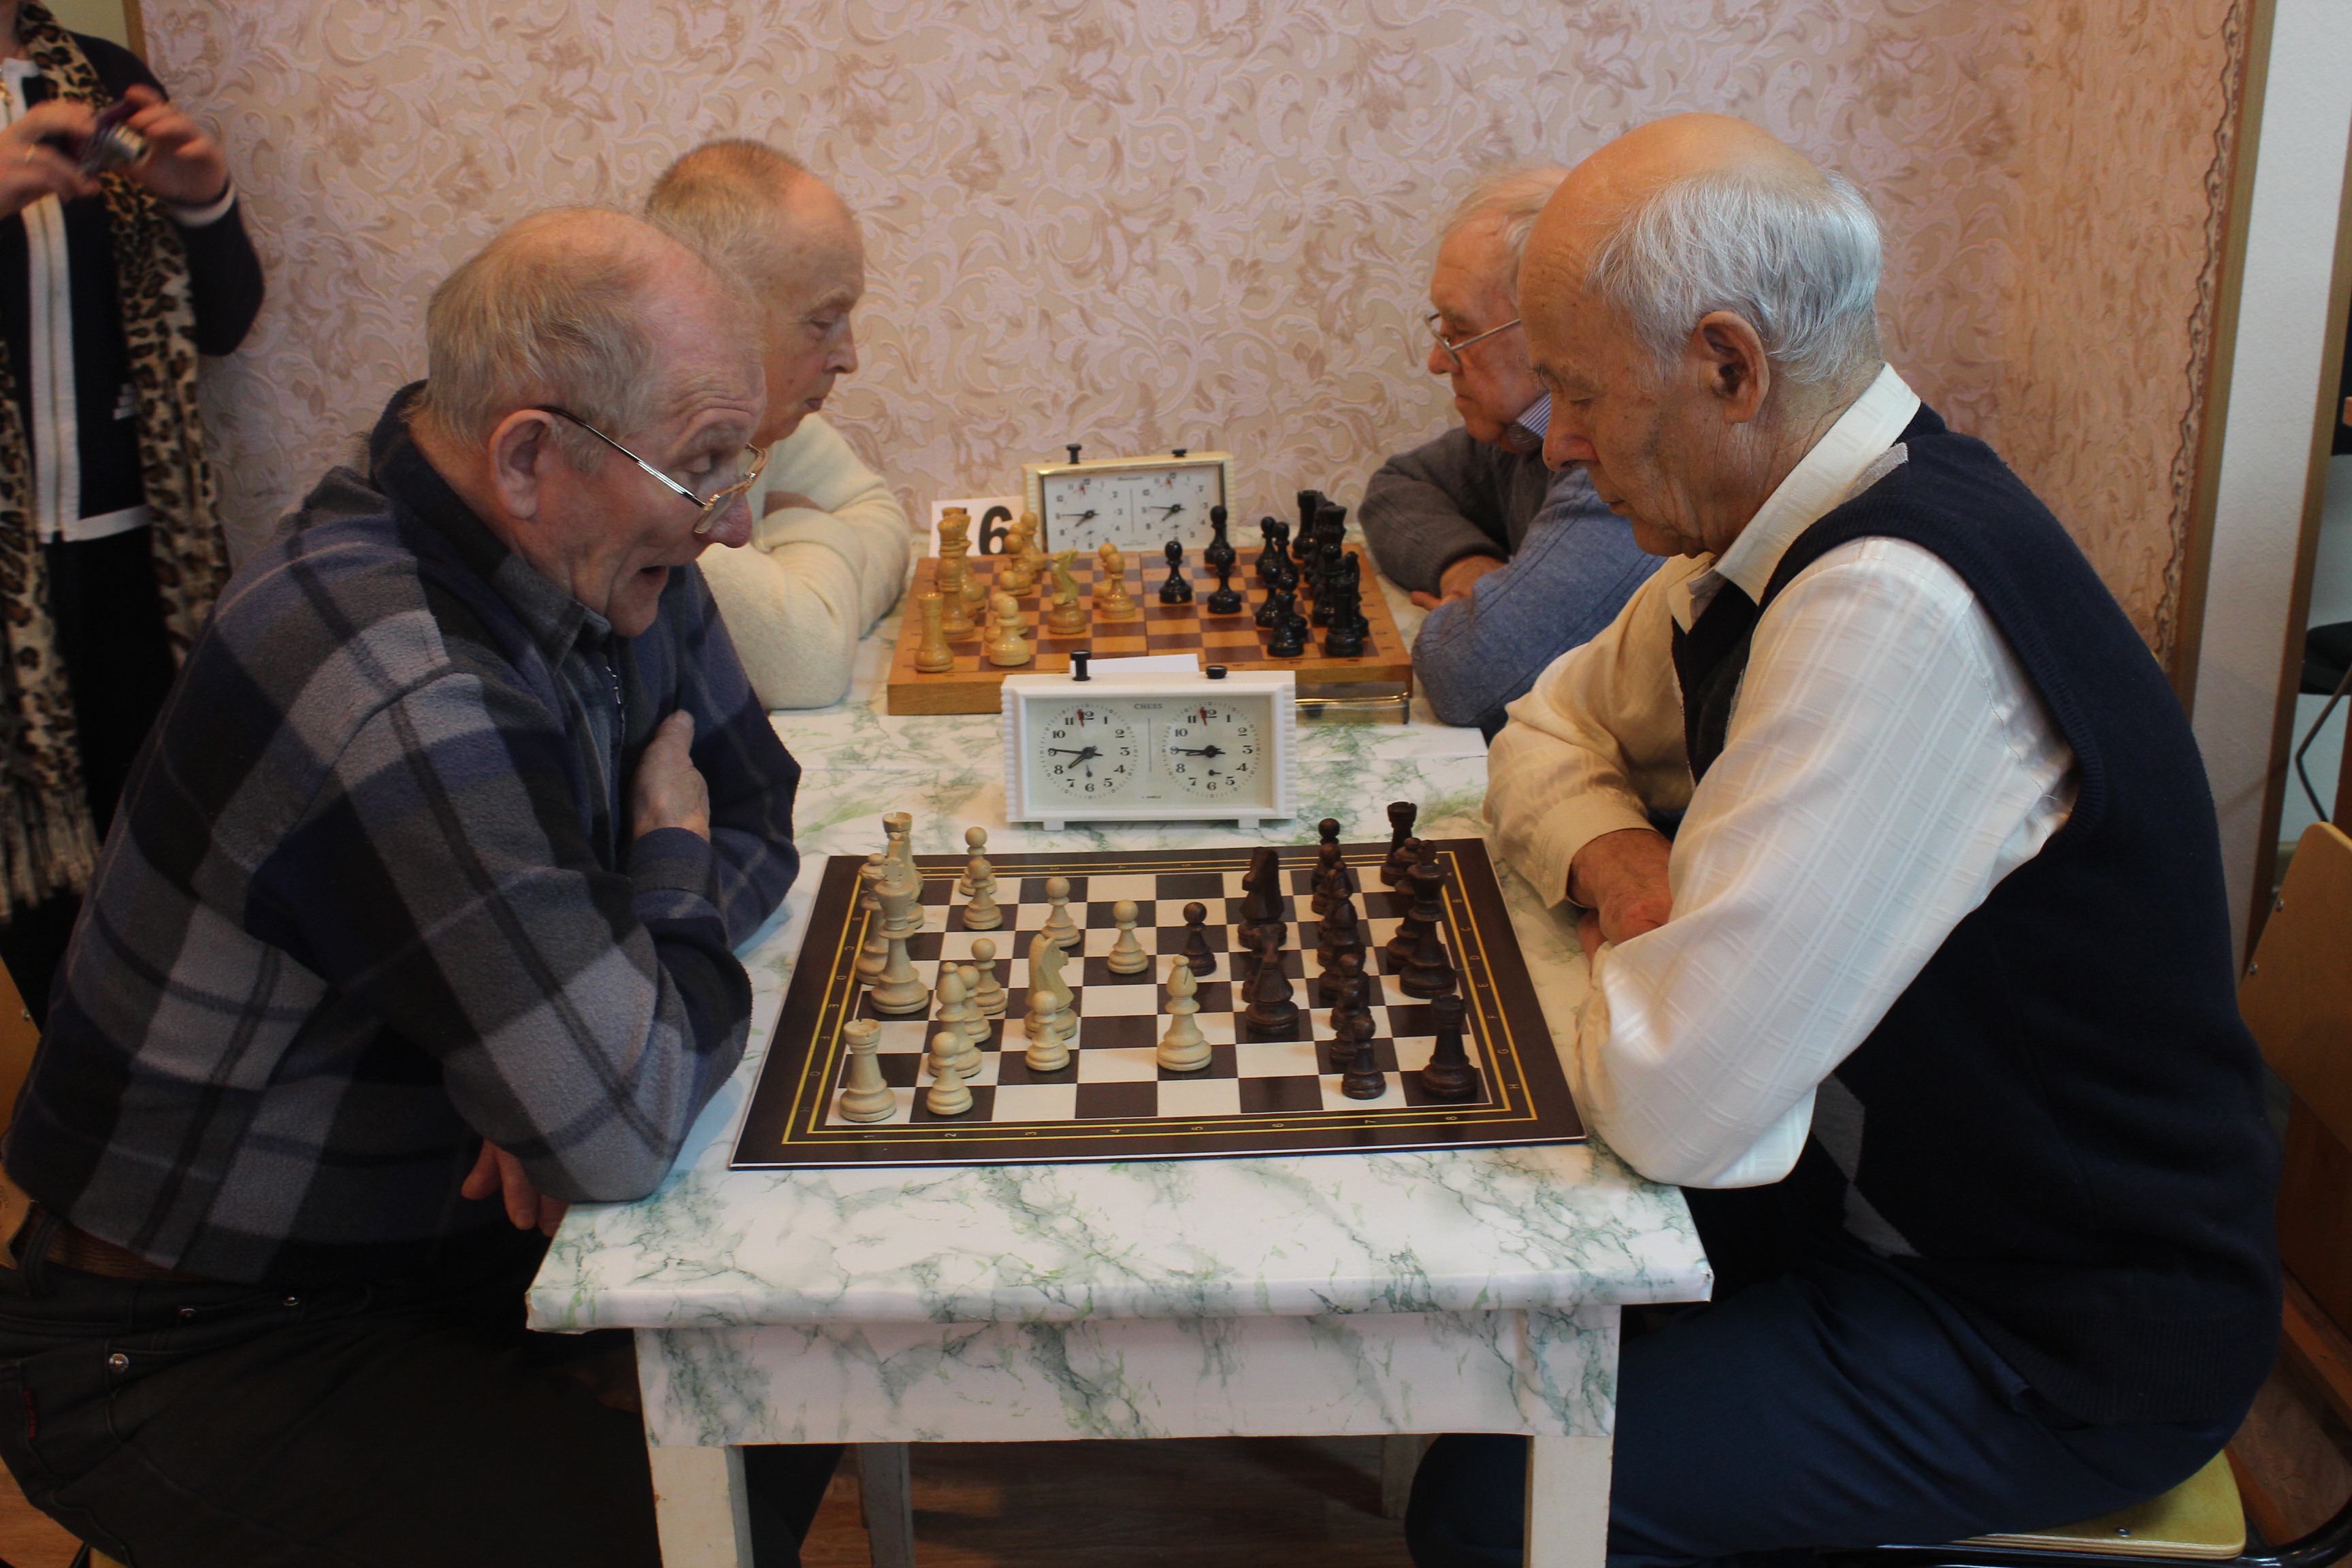 Пенсионеры Ивановской области встретились в поединке за шахматным столом